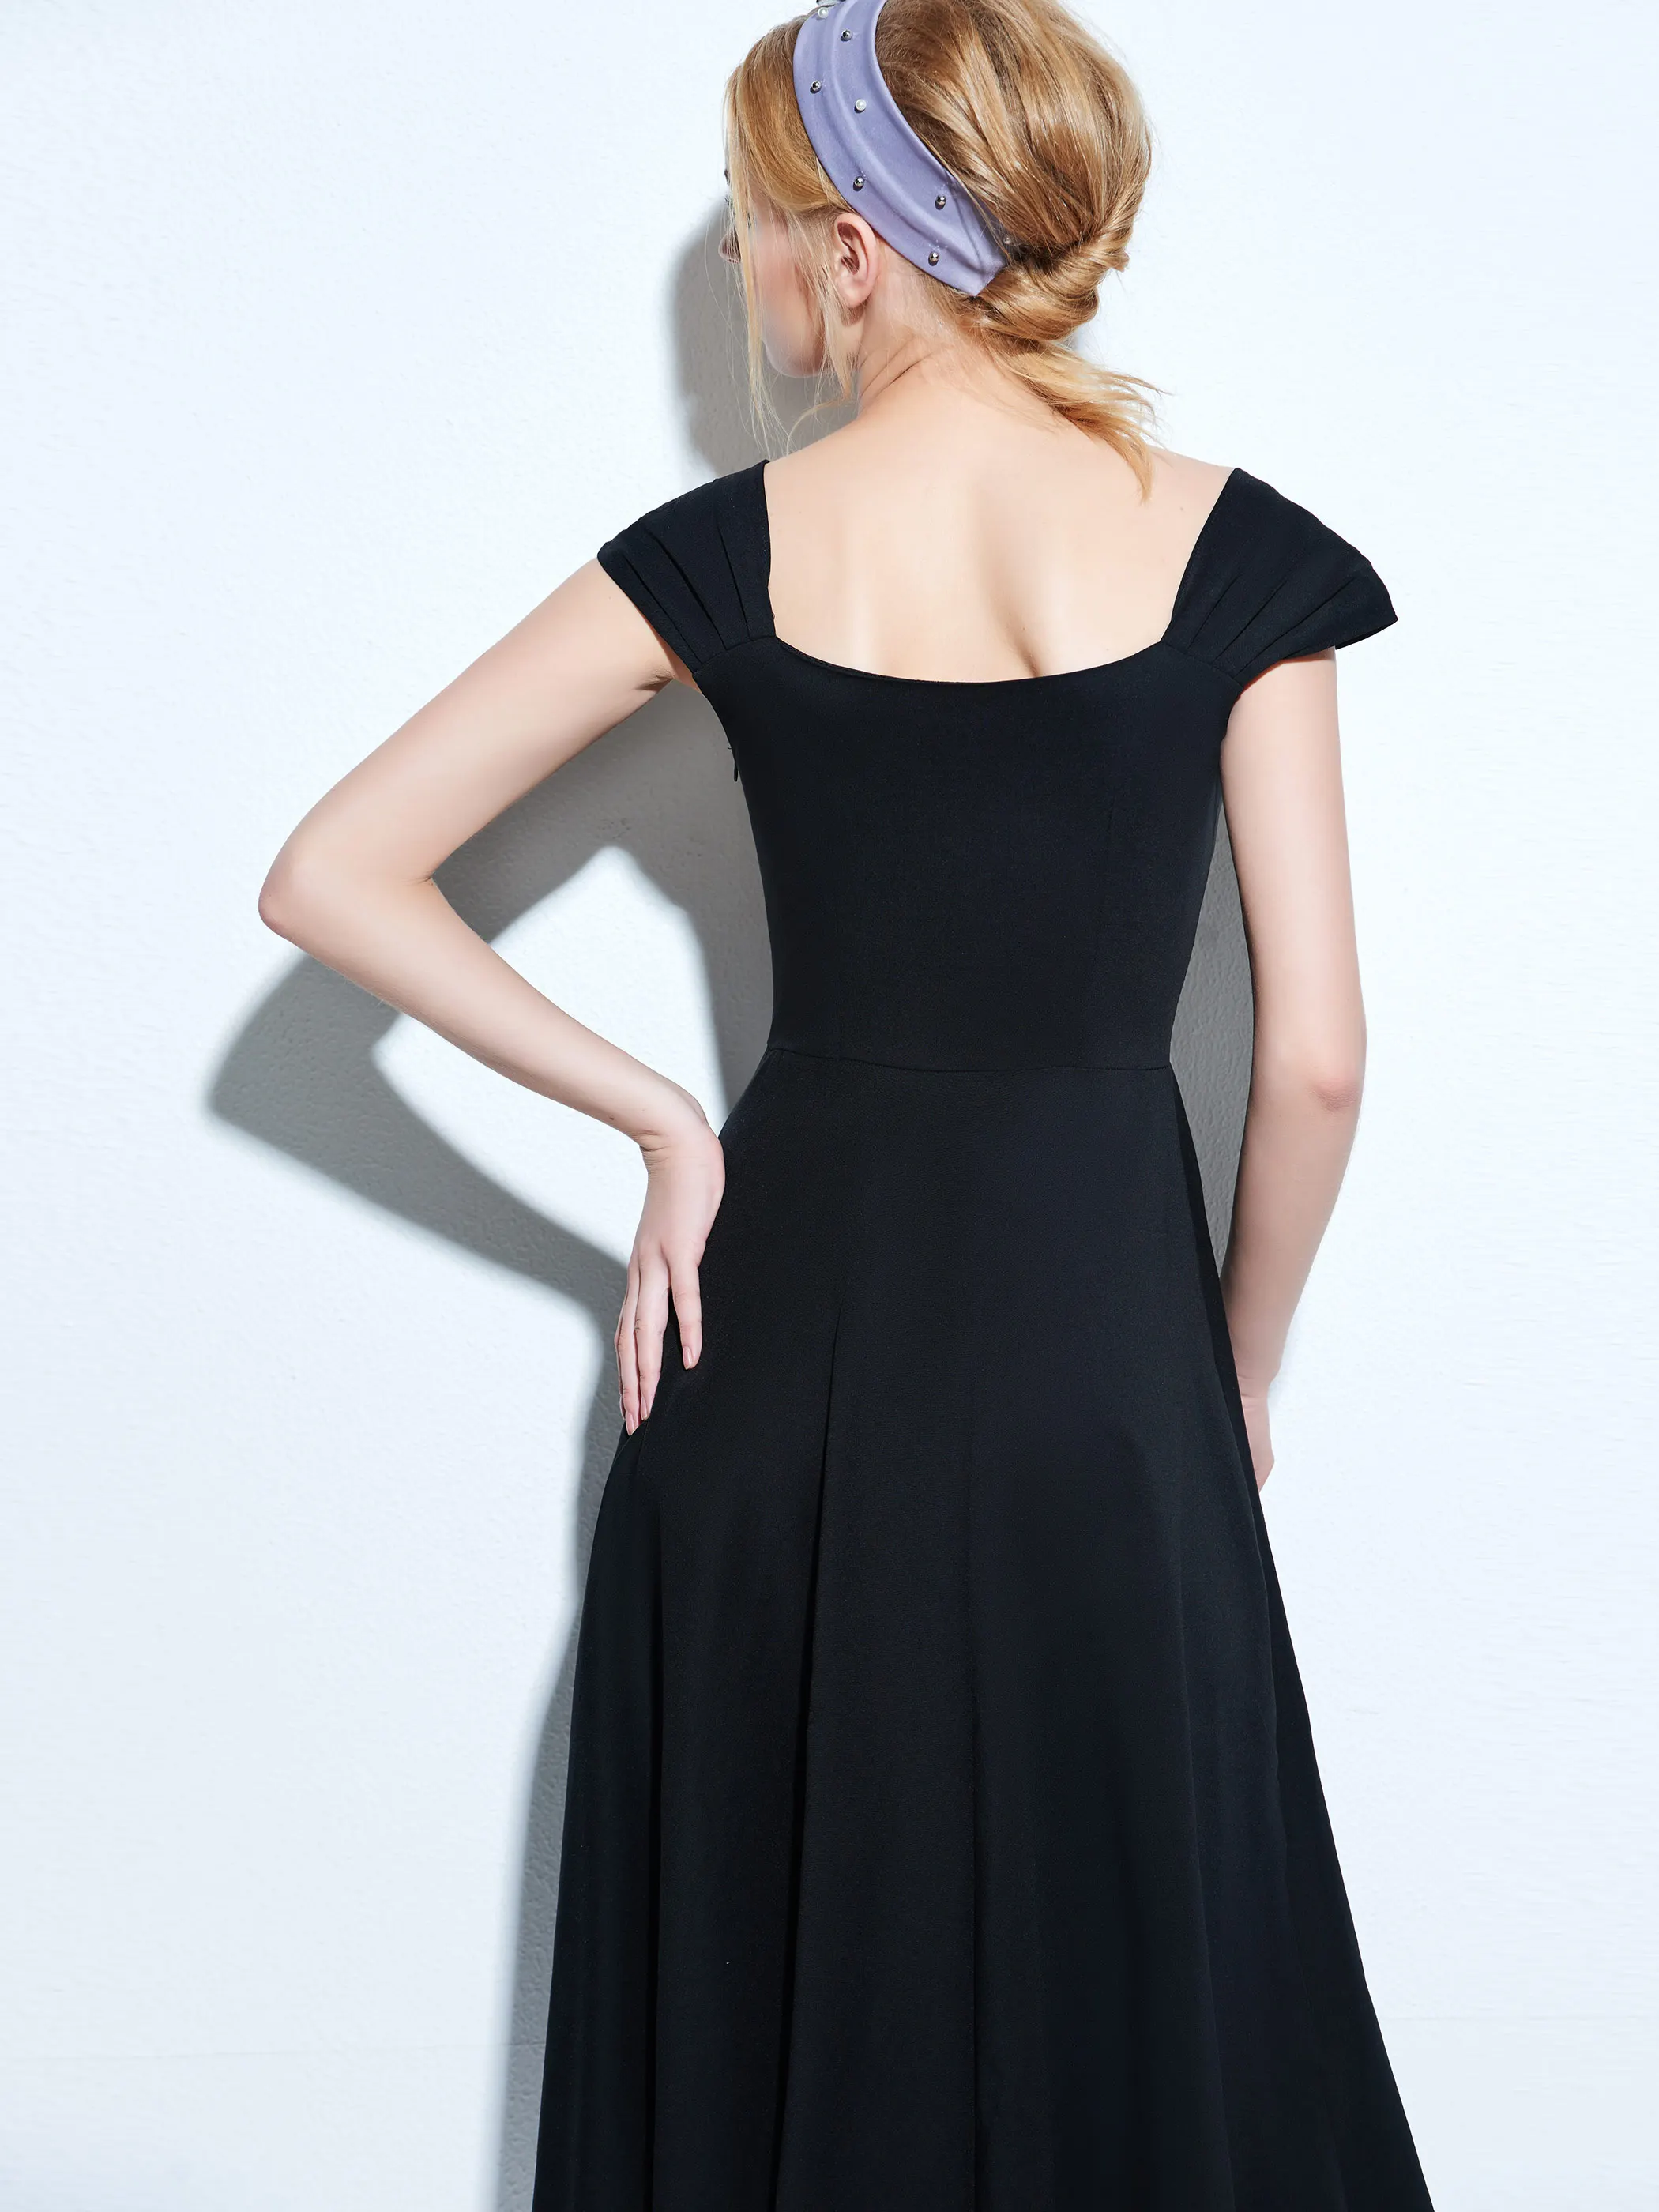 Хэллоуин готический стиль женское ретро платье черное ТРАПЕЦИЕВИДНОЕ с короткими рукавами винтажное платье на шнуровке Vestidos